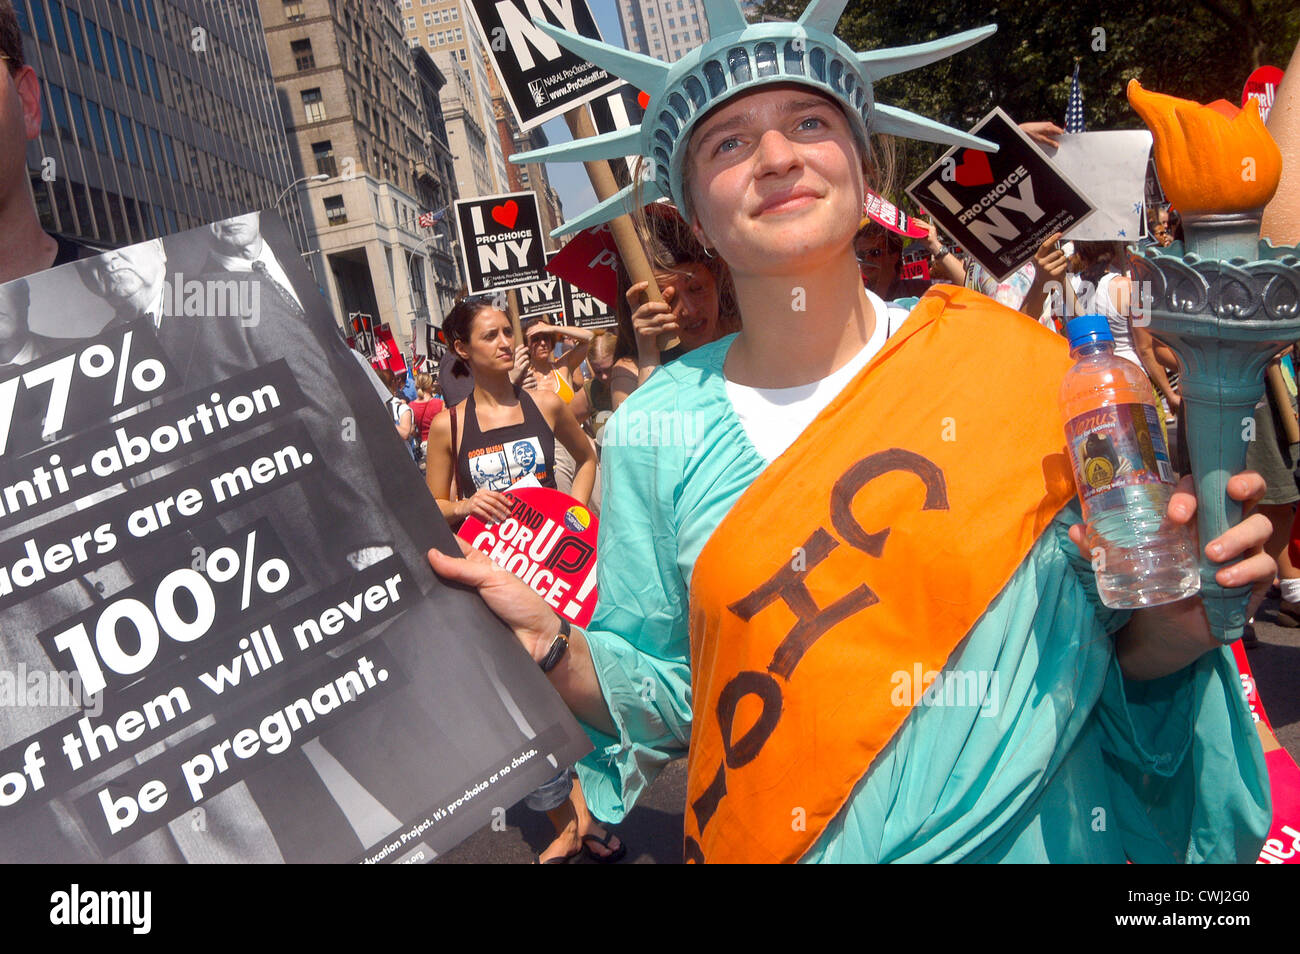 New York, NY - El aborto defensores de los derechos del rally en New York City Hall Foto de stock